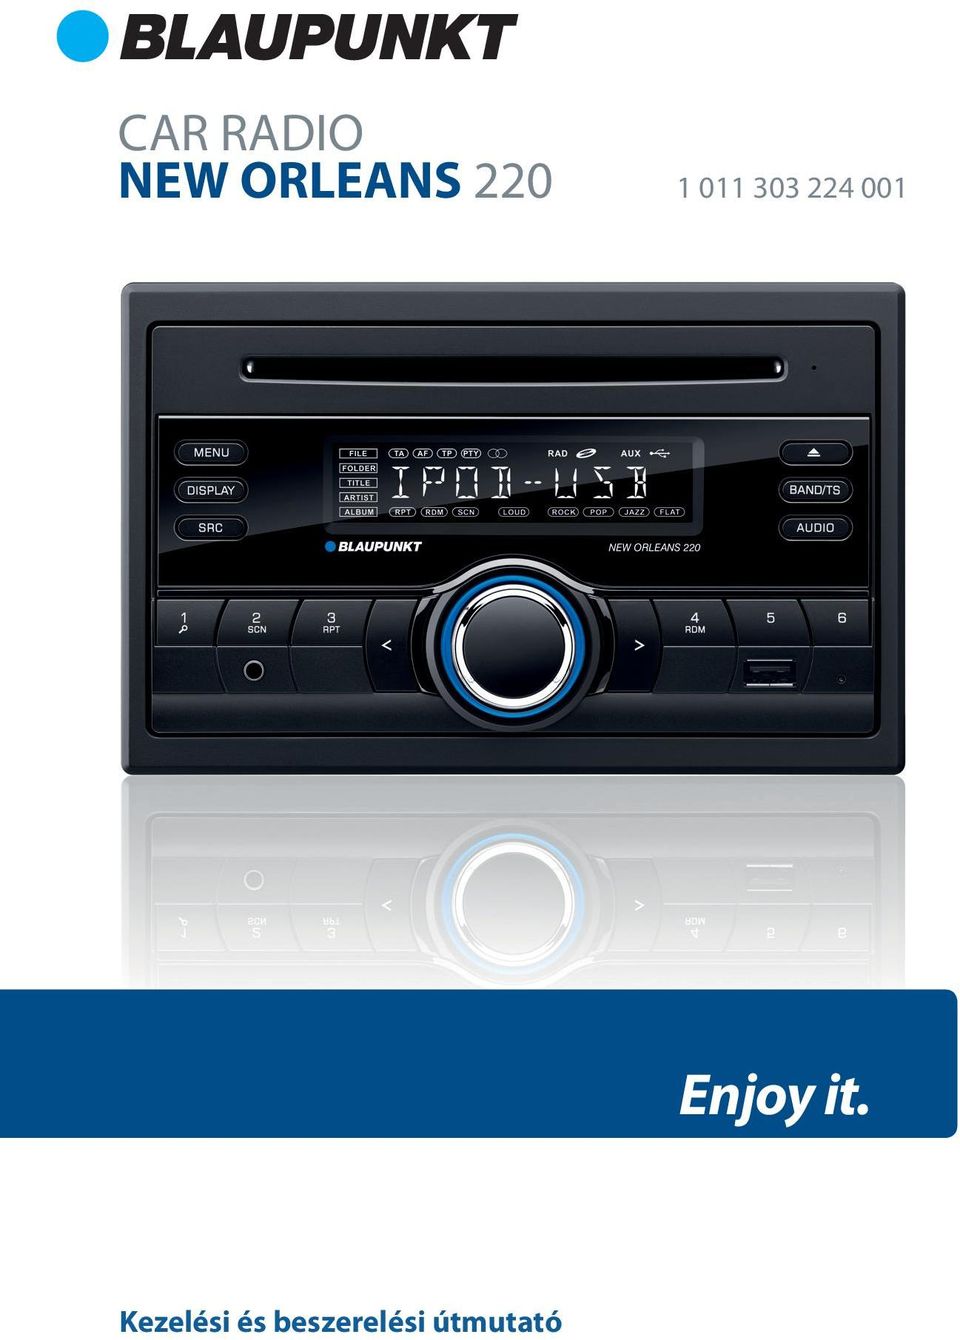 CAR RADIO NEW ORLEANS Enjoy it. Kezelési és beszerelési útmutató - PDF  Ingyenes letöltés